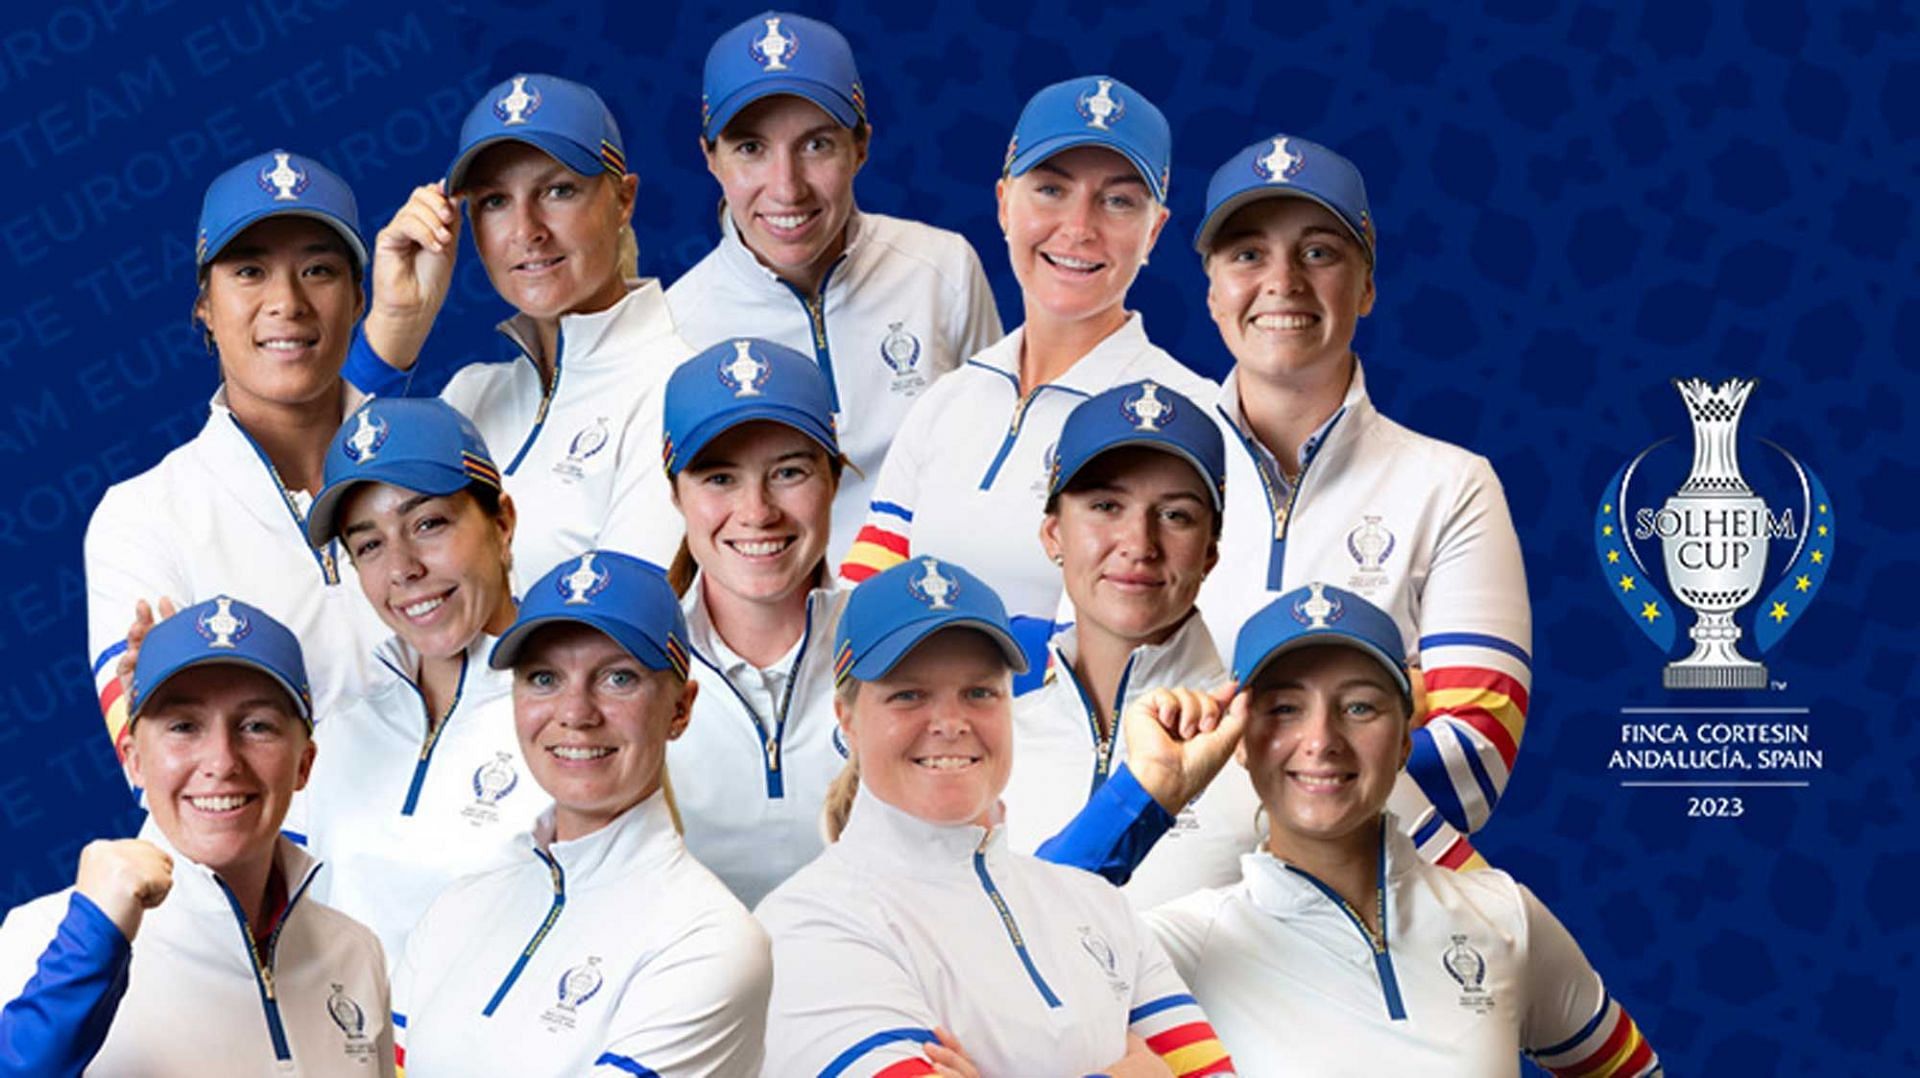 Soleheim Cup European Team (image via LPGA)